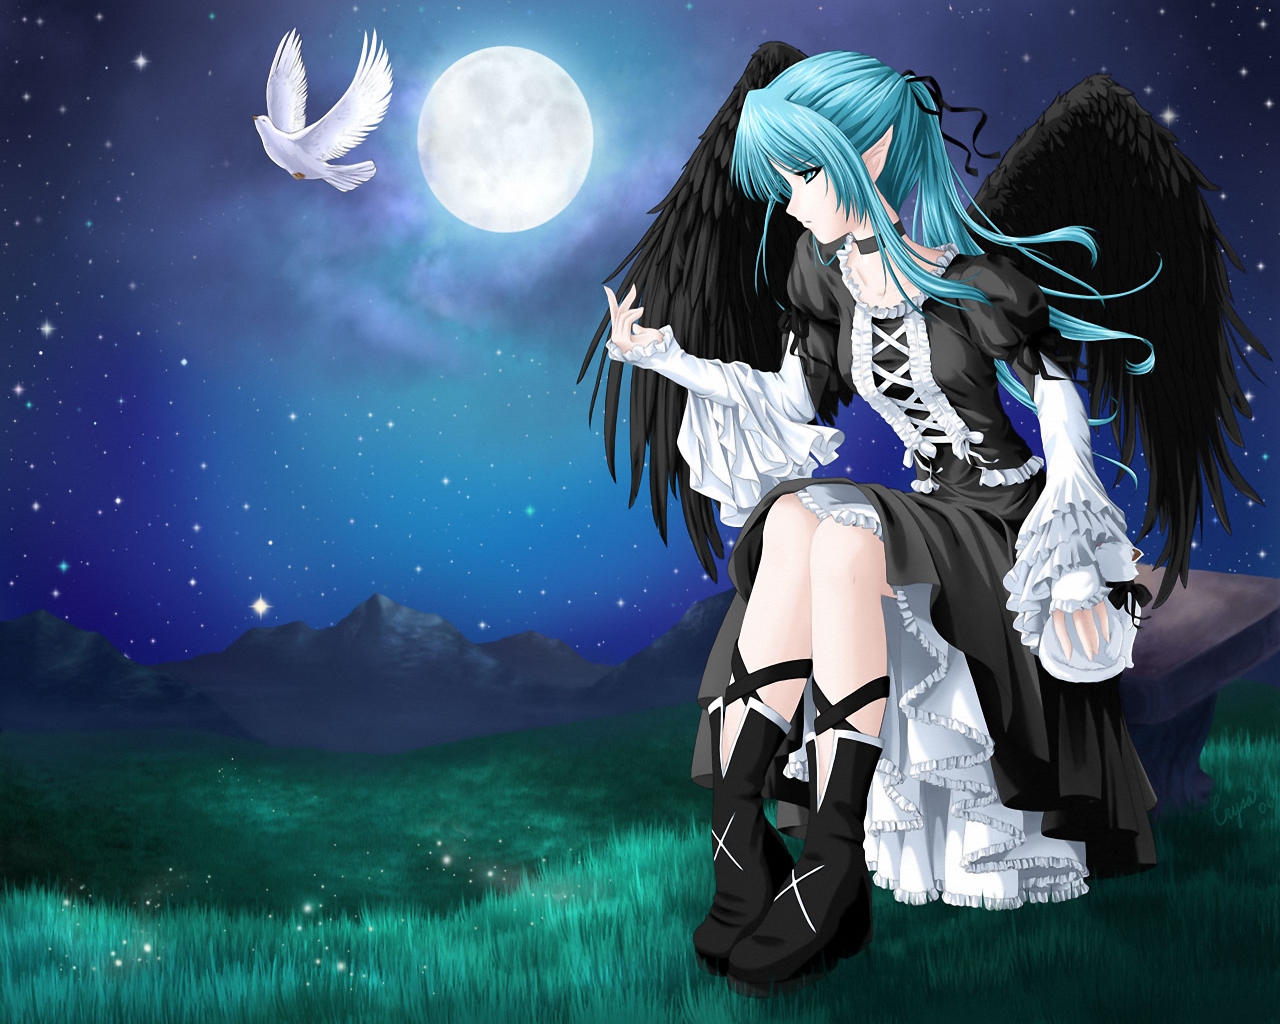 3d обои Девушка с чёрными крыльями лунной ночью сидит на скамейке и смотрит на улетающего с её руки белого голубя  1280х1024 # 1745